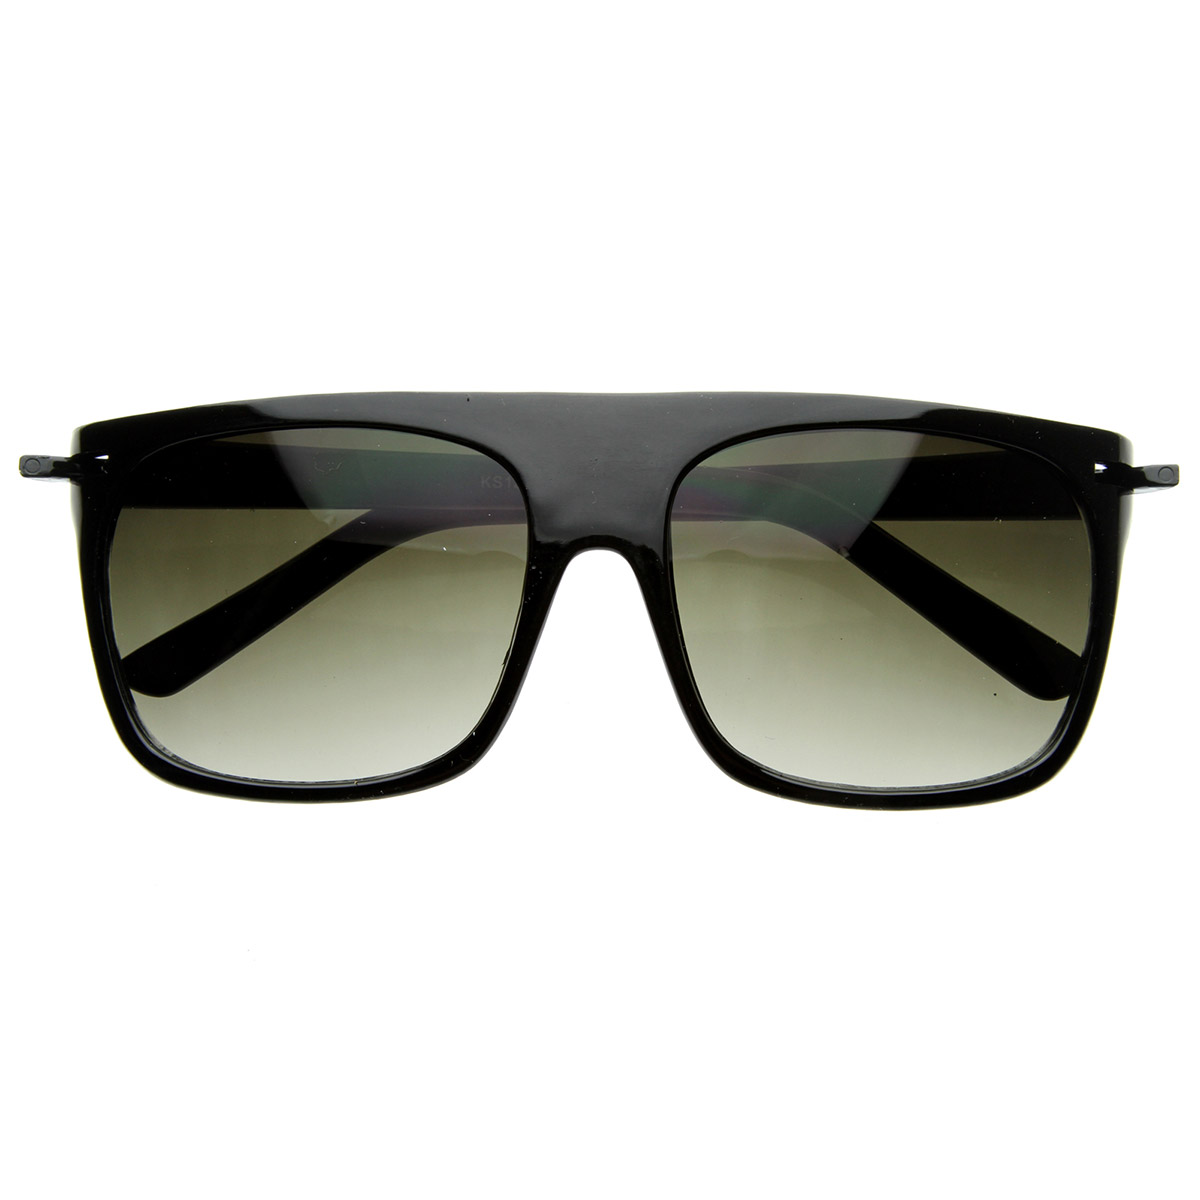 Vintage Flat Top Sunglasses 17